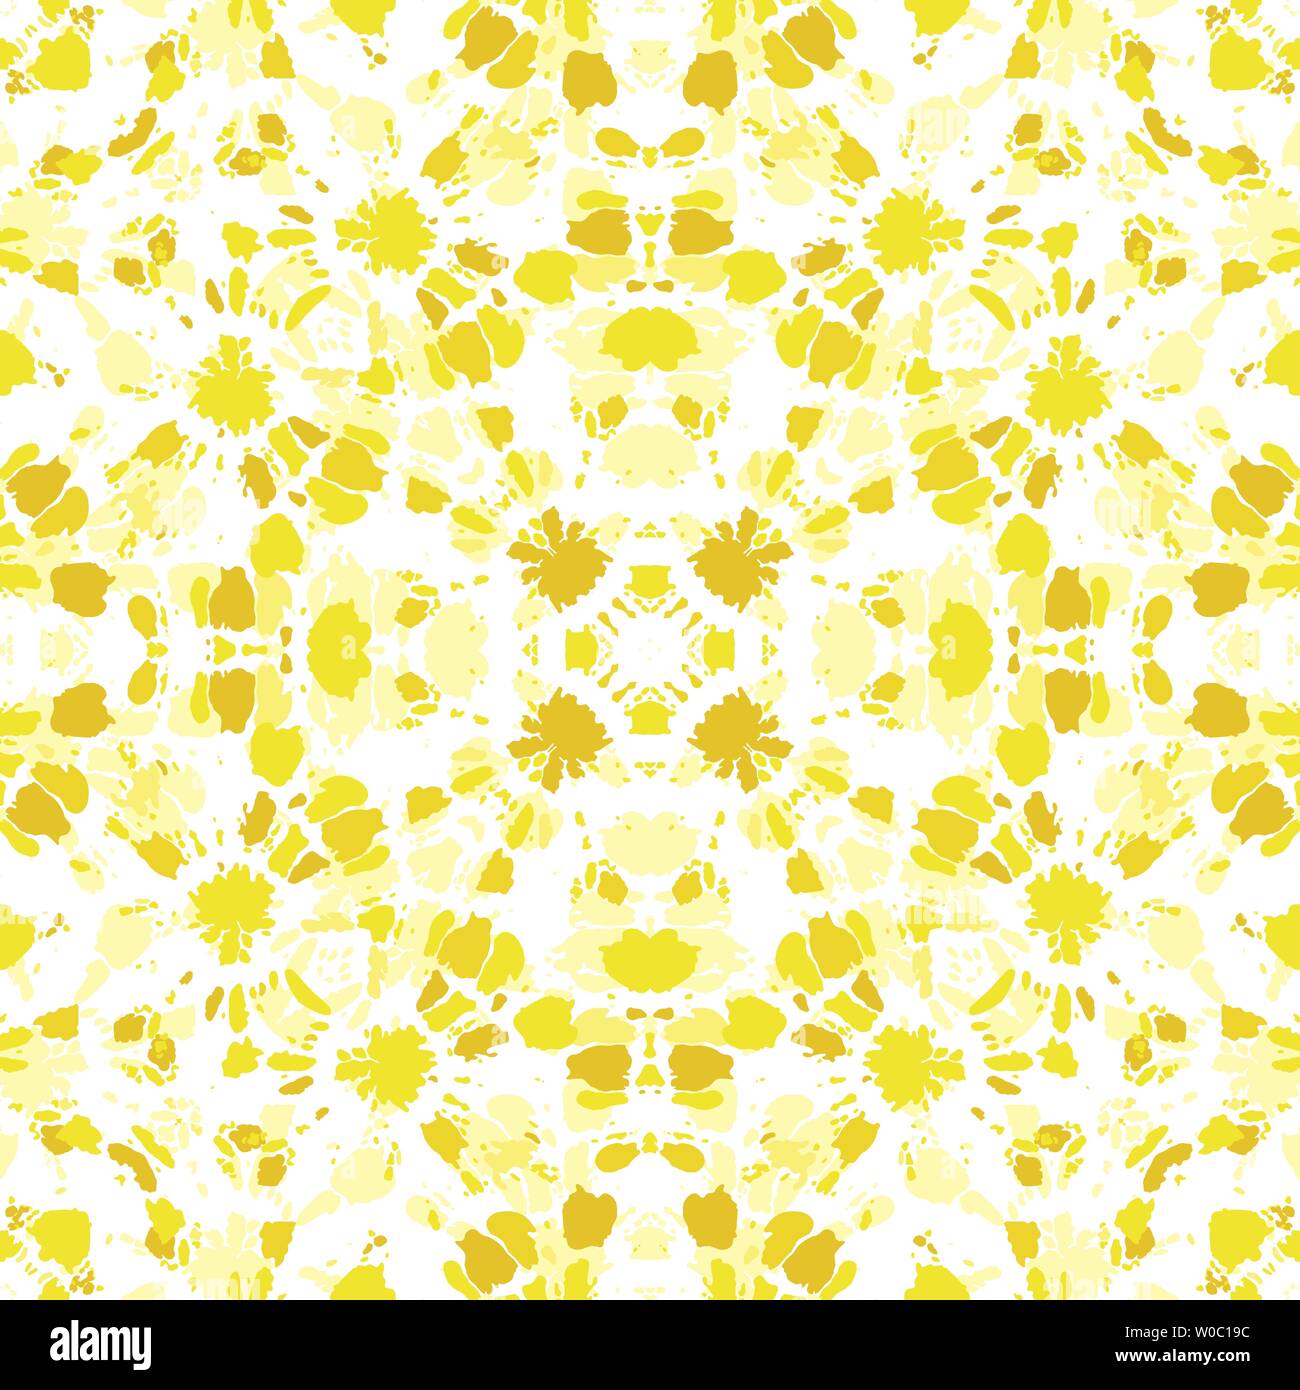 Monochrome jaune vif Shibori Tie-Dye Kaléidoscope Sunburst Mandala en miroir sur fond blanc transparent vecteur modèle. Parfait pour le printemps Illustration de Vecteur